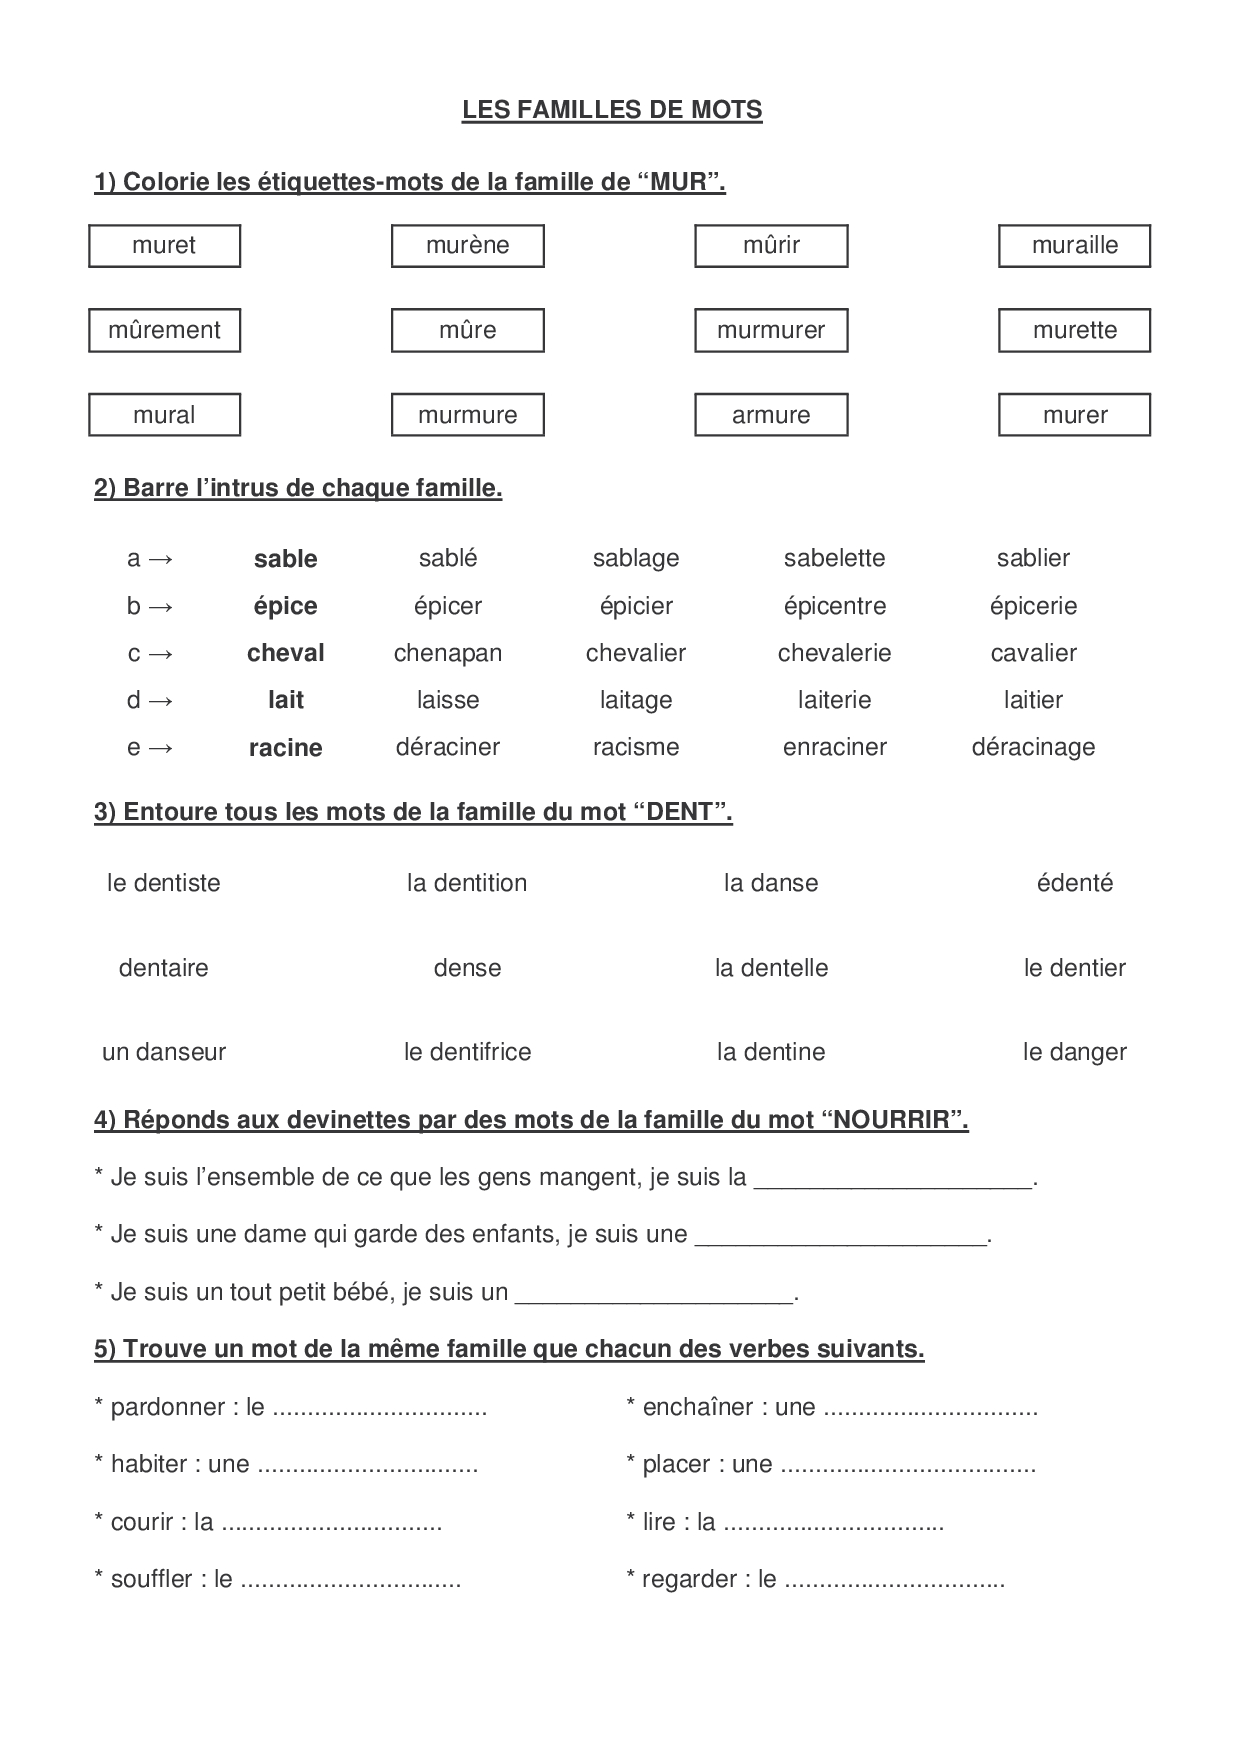 Les Familles De Mots Cm1 Exercices Pdf Les familles de mots - exercices 2 - AlloSchool